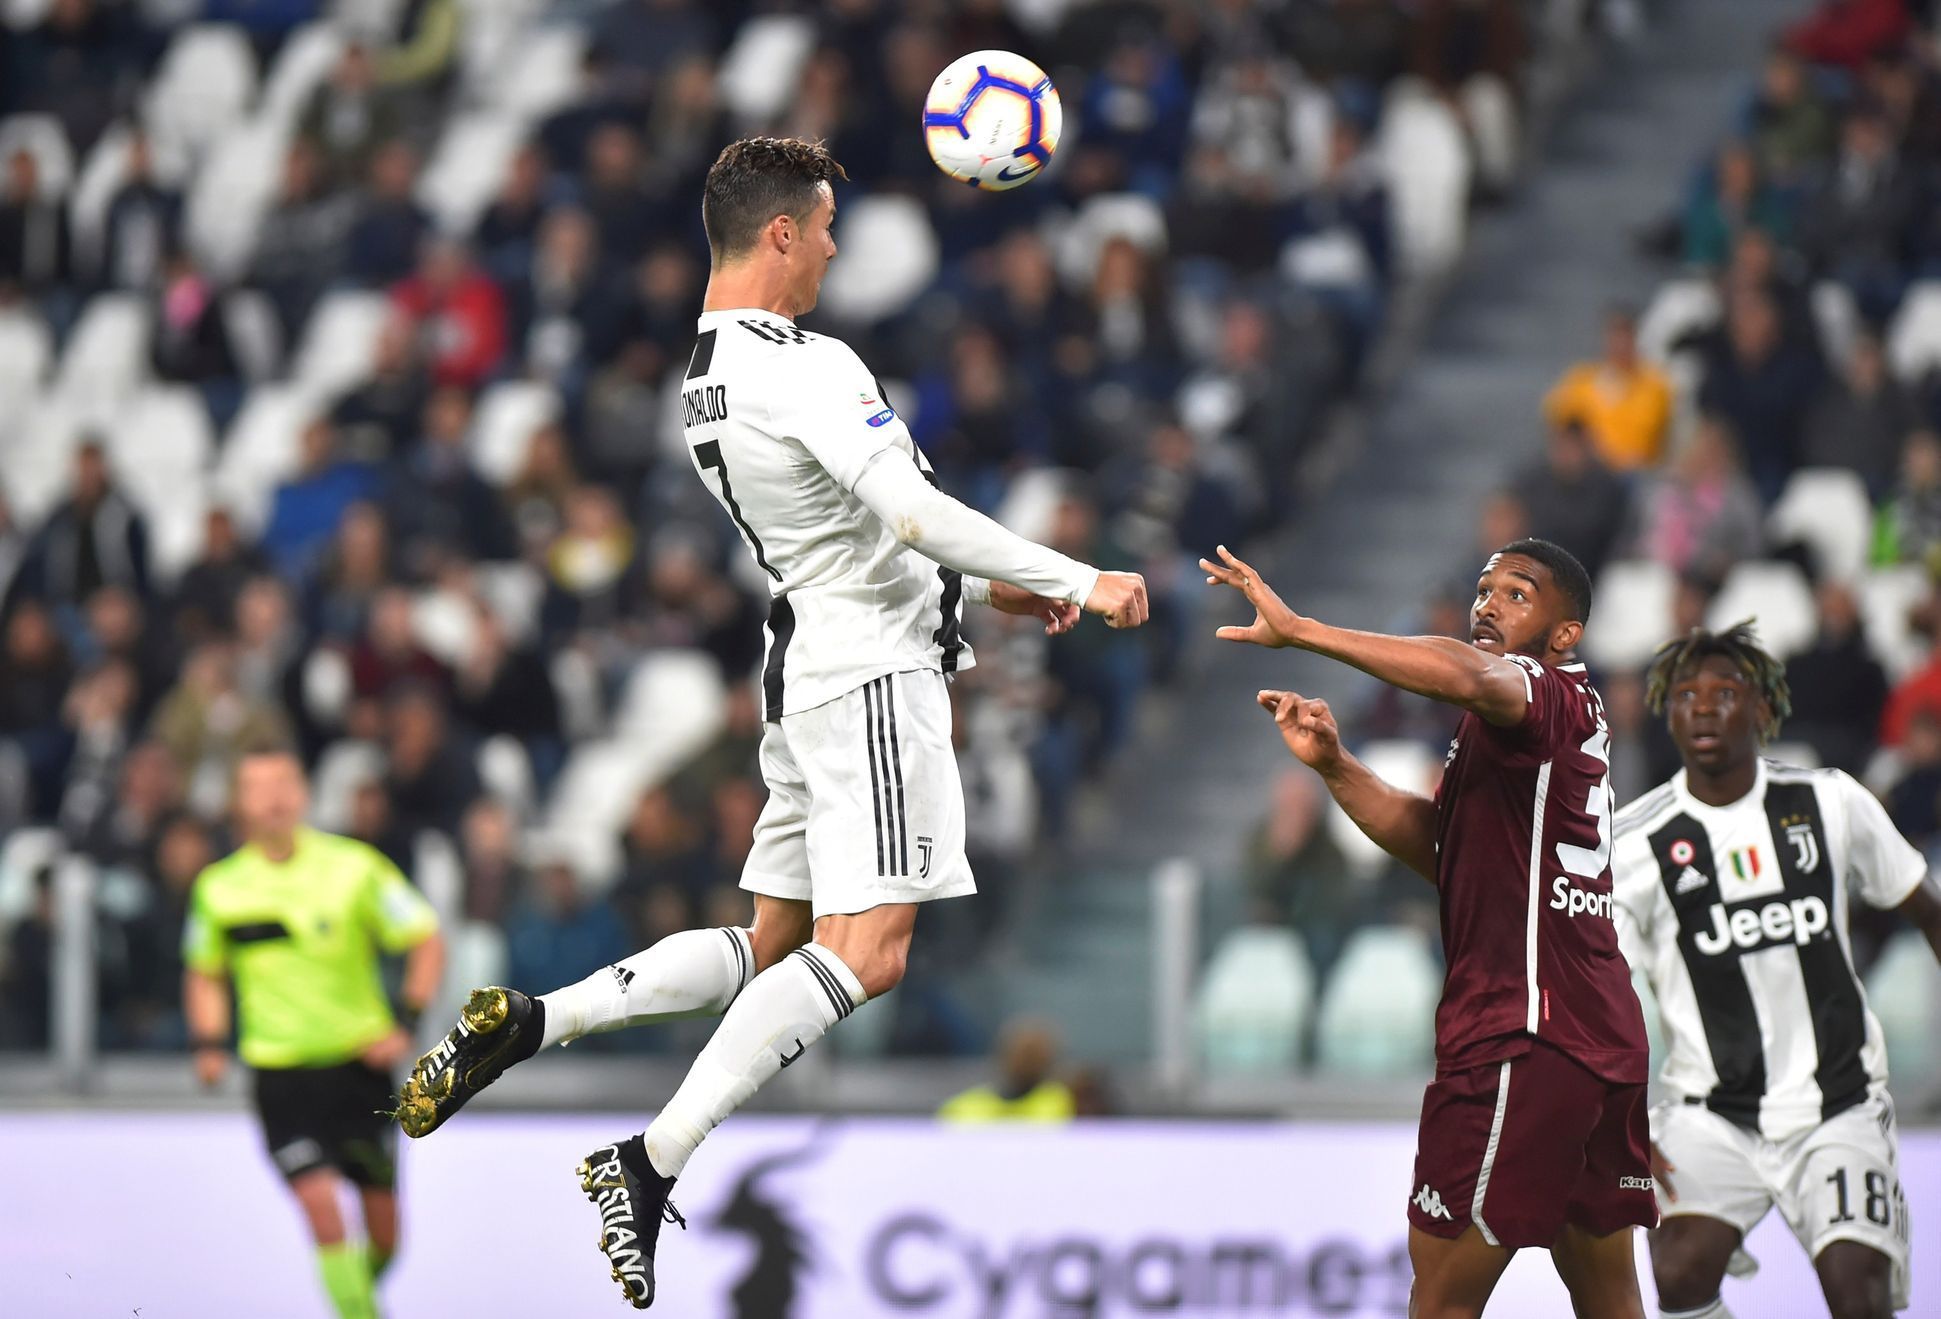 Italská fotbalová liga 2018/19, Juventus - Turín FC: Cristiano Ronaldo vyrovnal na 1:1.